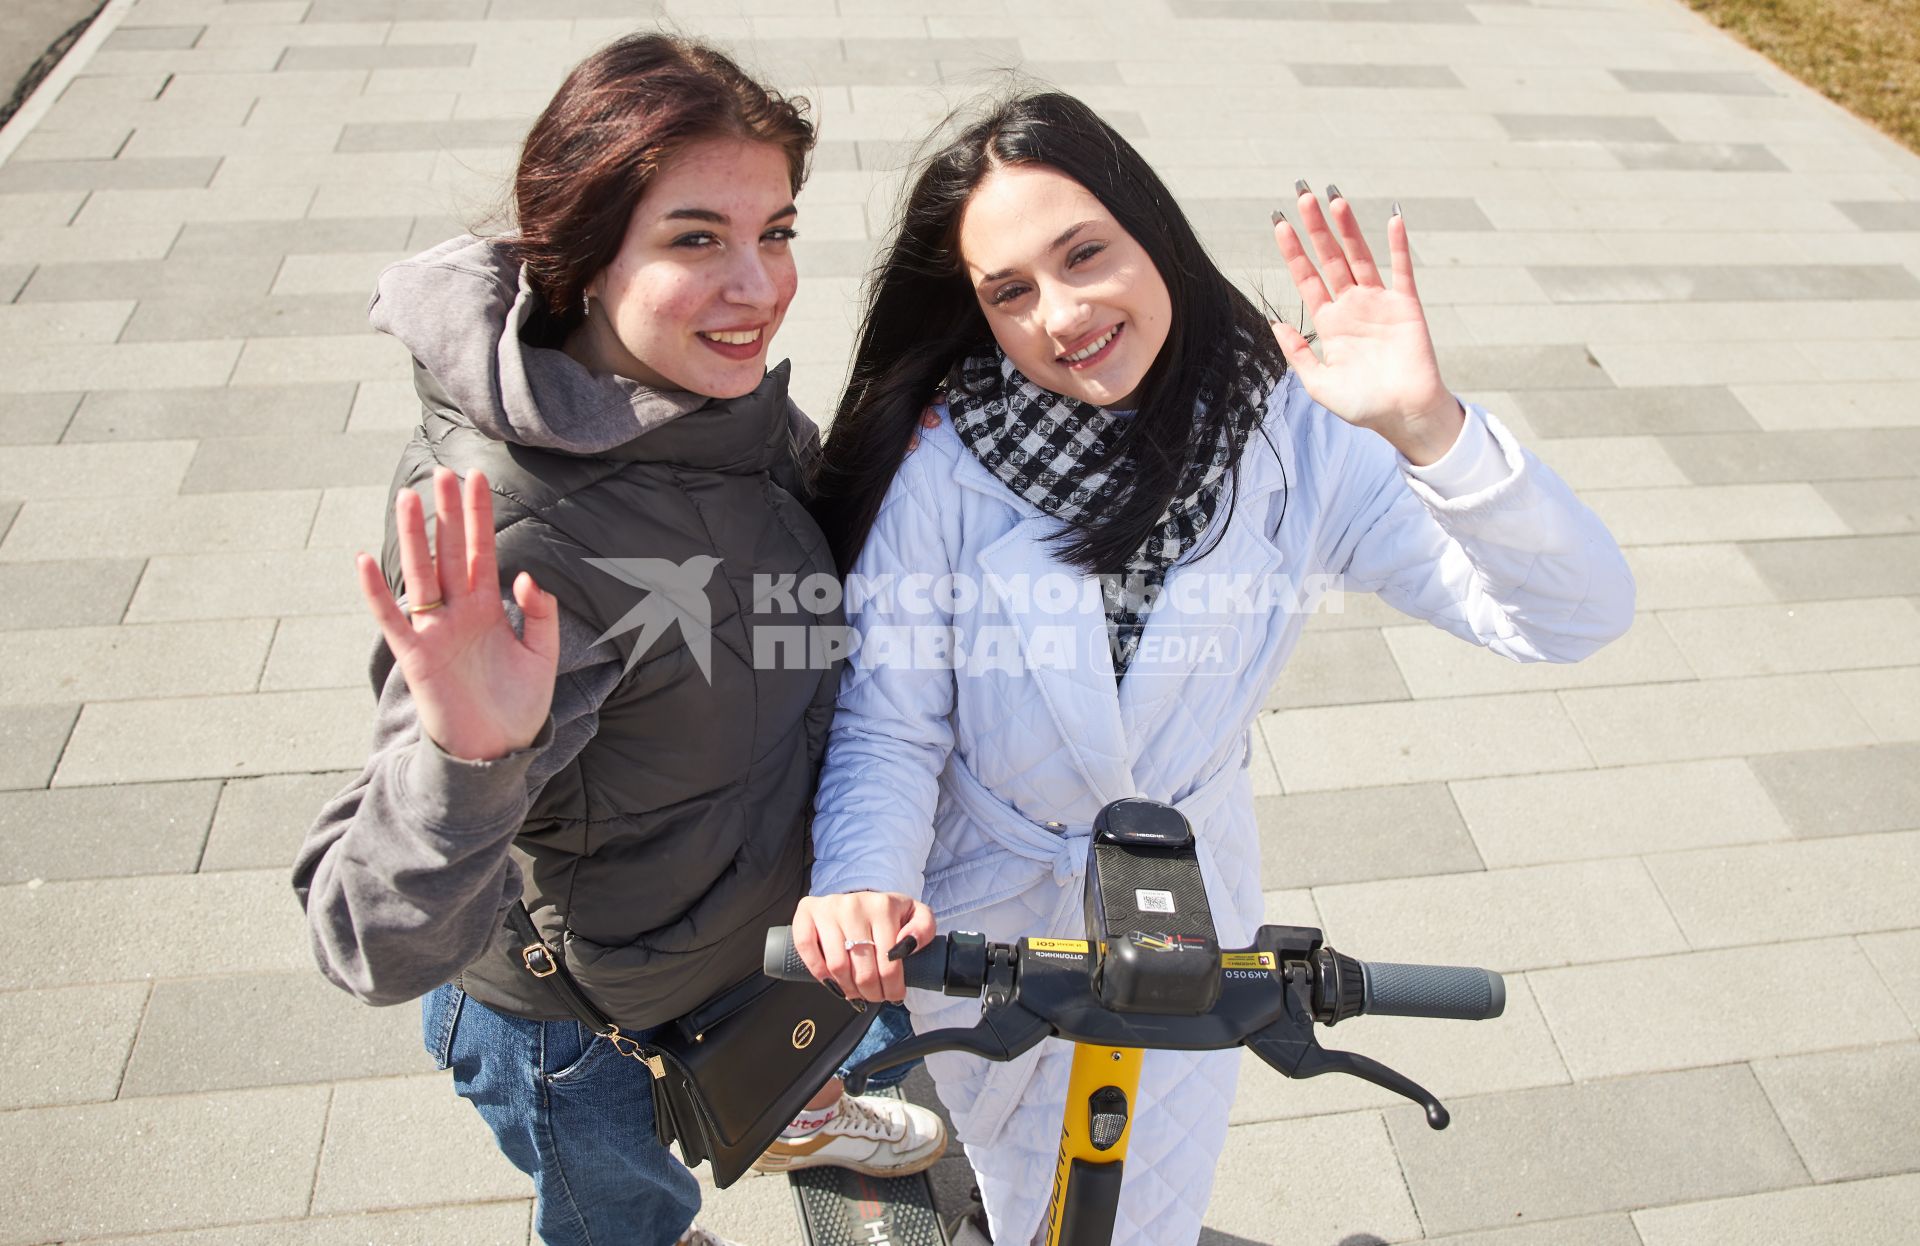 Пермь. Девушки с электросамокатом стоят на улице.